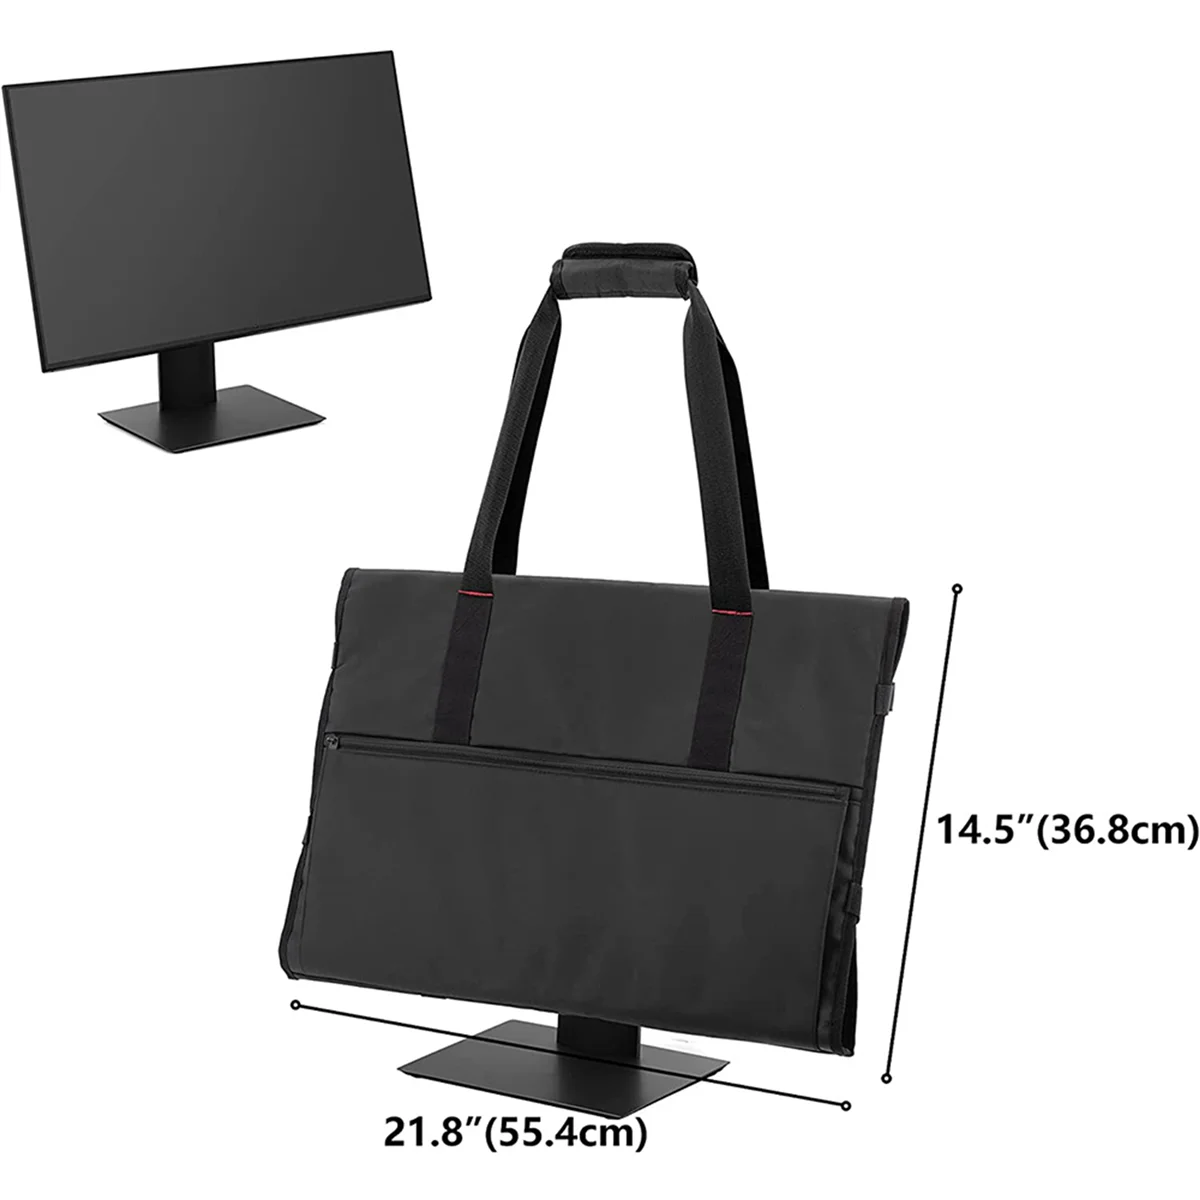 2 сумки для переноски 24-дюймовых ЖК-экранов и мониторов, защитный чехол для 24-дюймового монитора, черный Изображение 1 